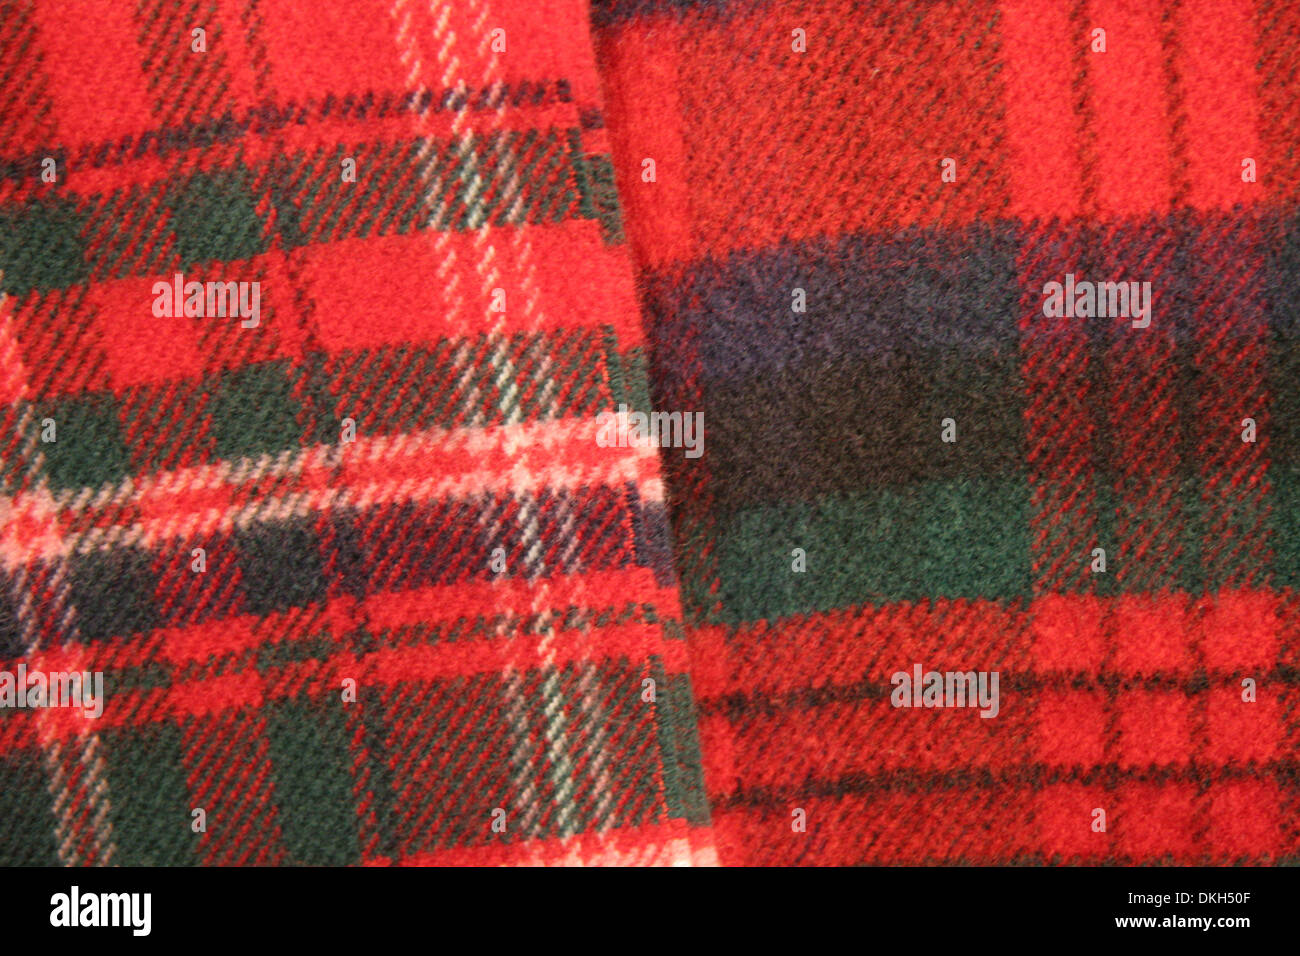 Chiusura del tessuto di tartan. Combinazione di rossi, verdi, blu e crema. Tradizionalmente Scotish in rappresentanza di clan, Scozia. Foto Stock